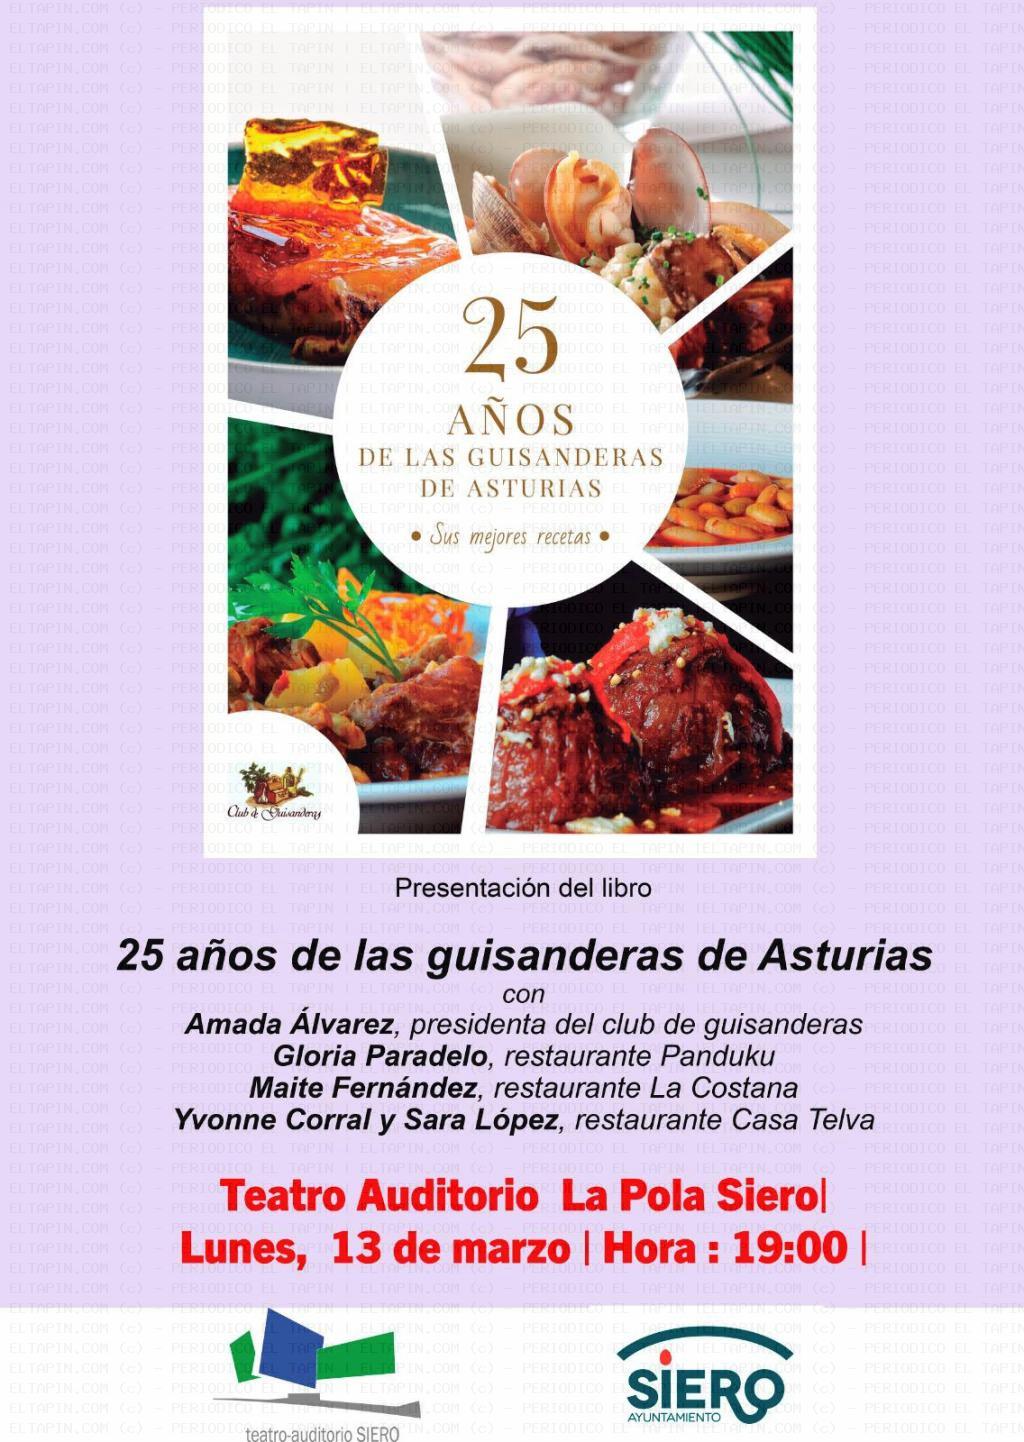 El Tapin - El Auditorio de Pola acoge la presentación del libro “25 años de las guisanderas de Asturias” el lunes 13 de marzo